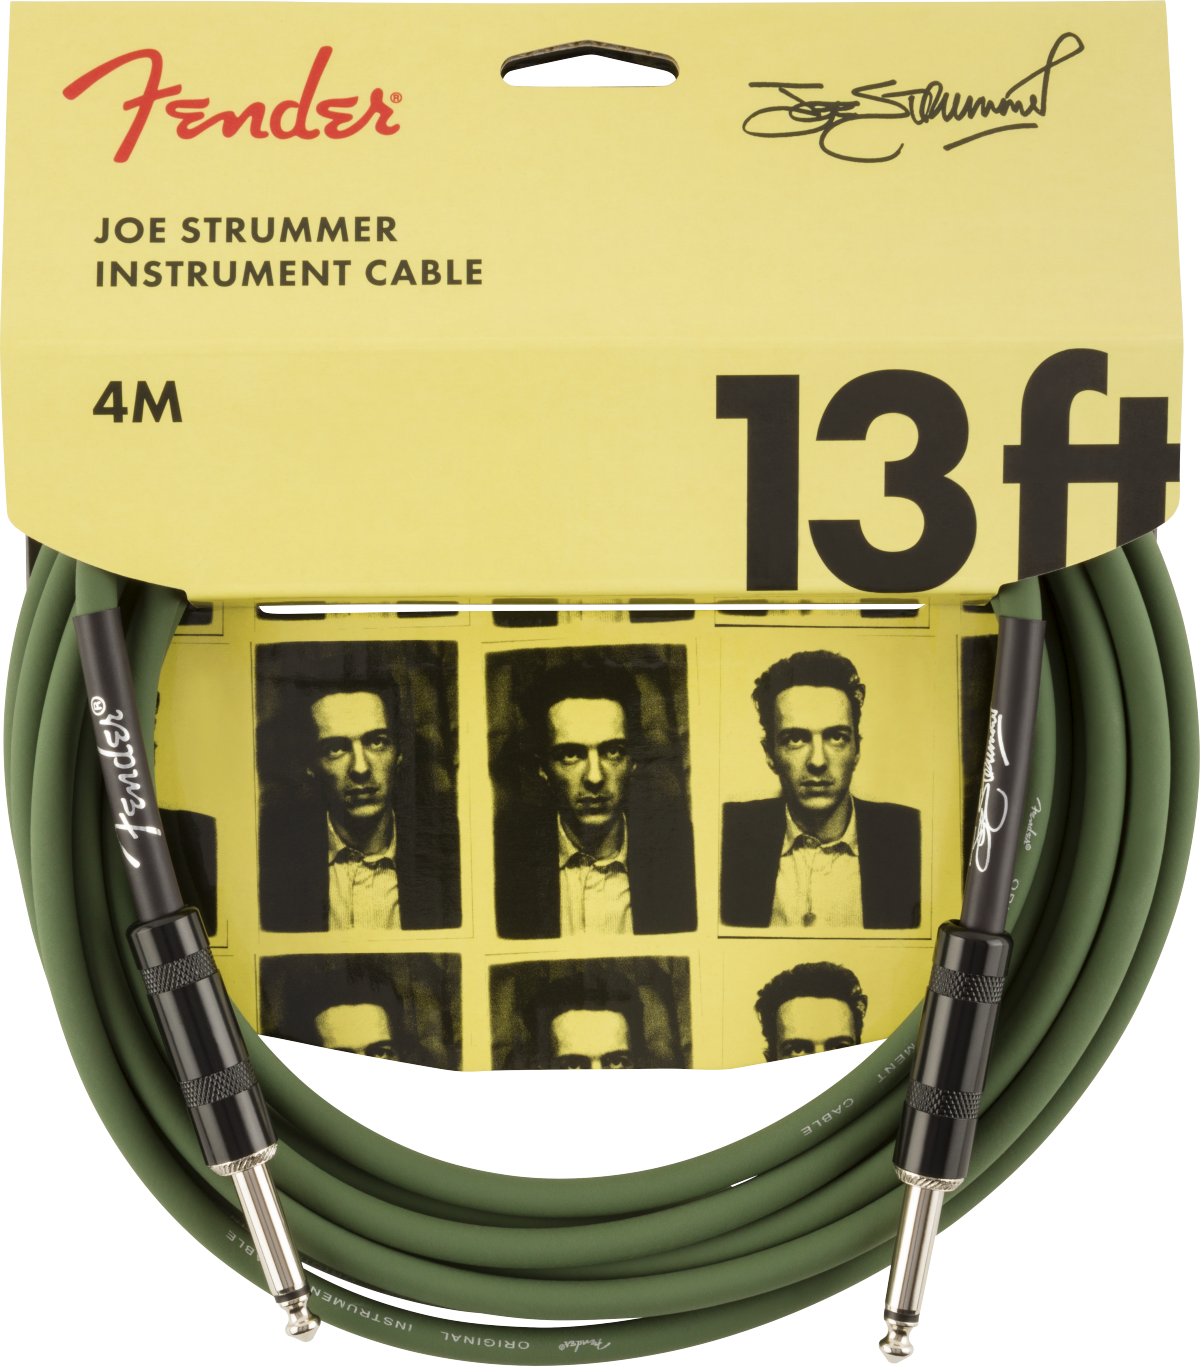 Fender Joe Strummer Instrument Cable 13ft